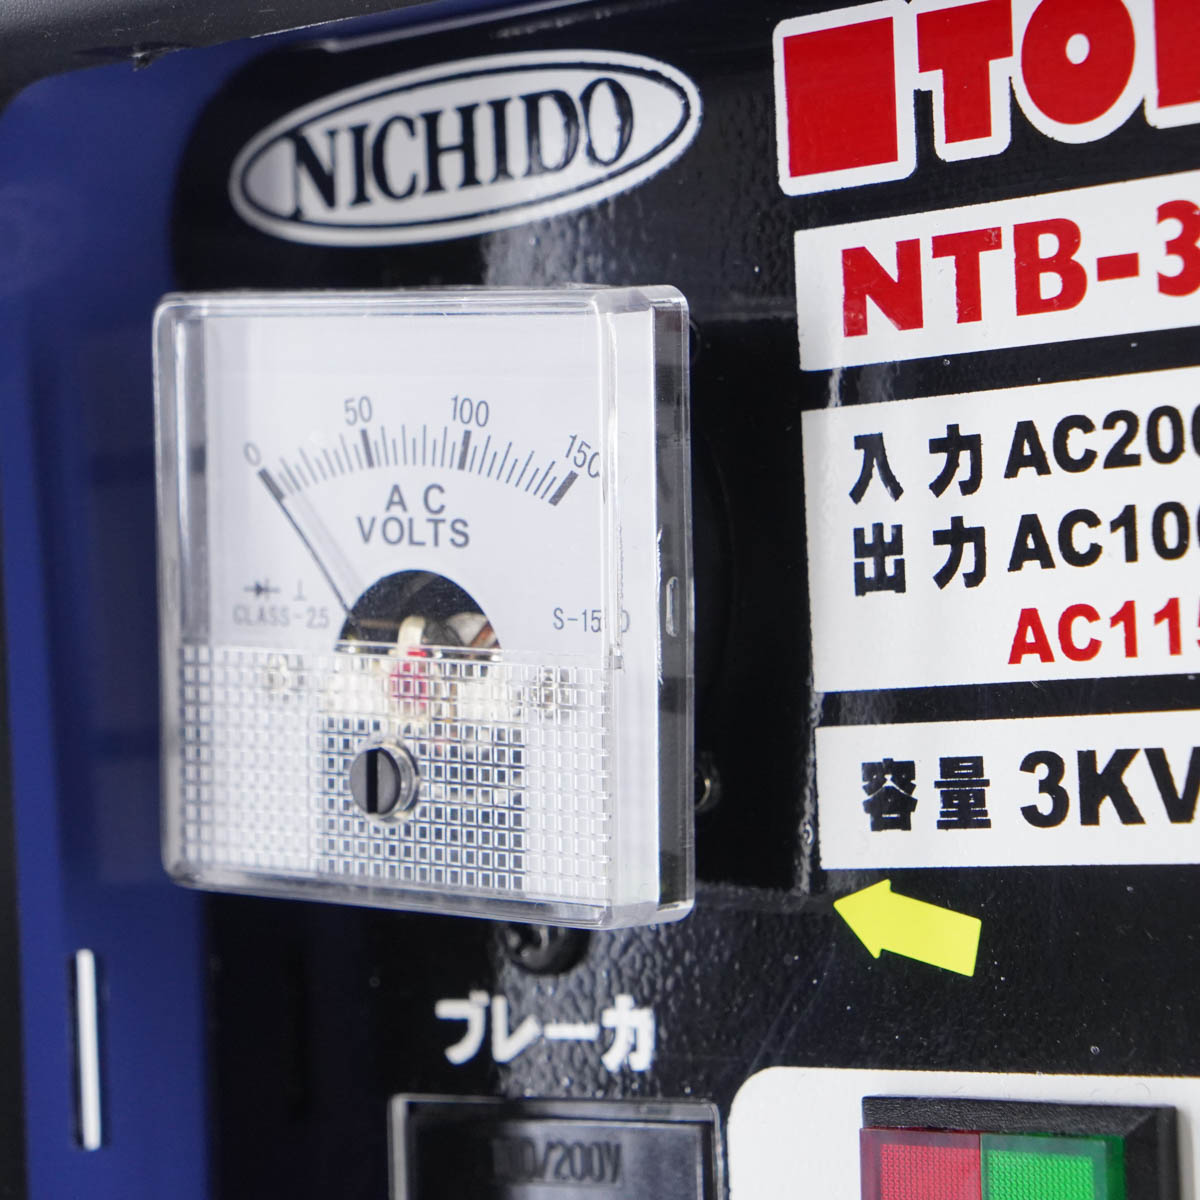 [JB]USED 現状販売 NICHIDO NTB-300D-CC TORAPACK カセットコンセントトラパック 降圧専用トランス ダウン